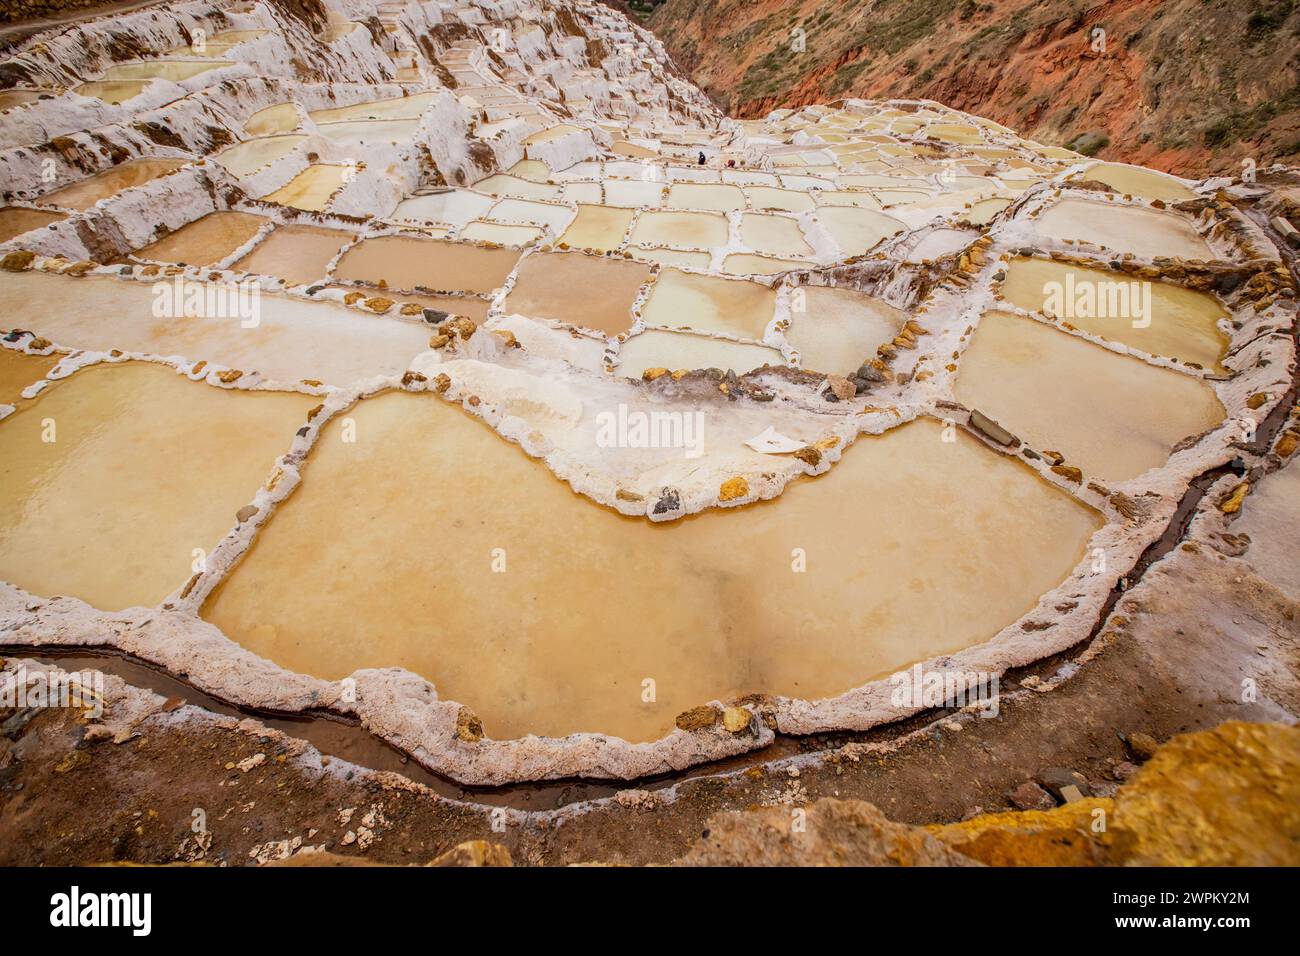 Mines de sel de Maras (Salineras de Maras), Pérou, Amérique du Sud Banque D'Images